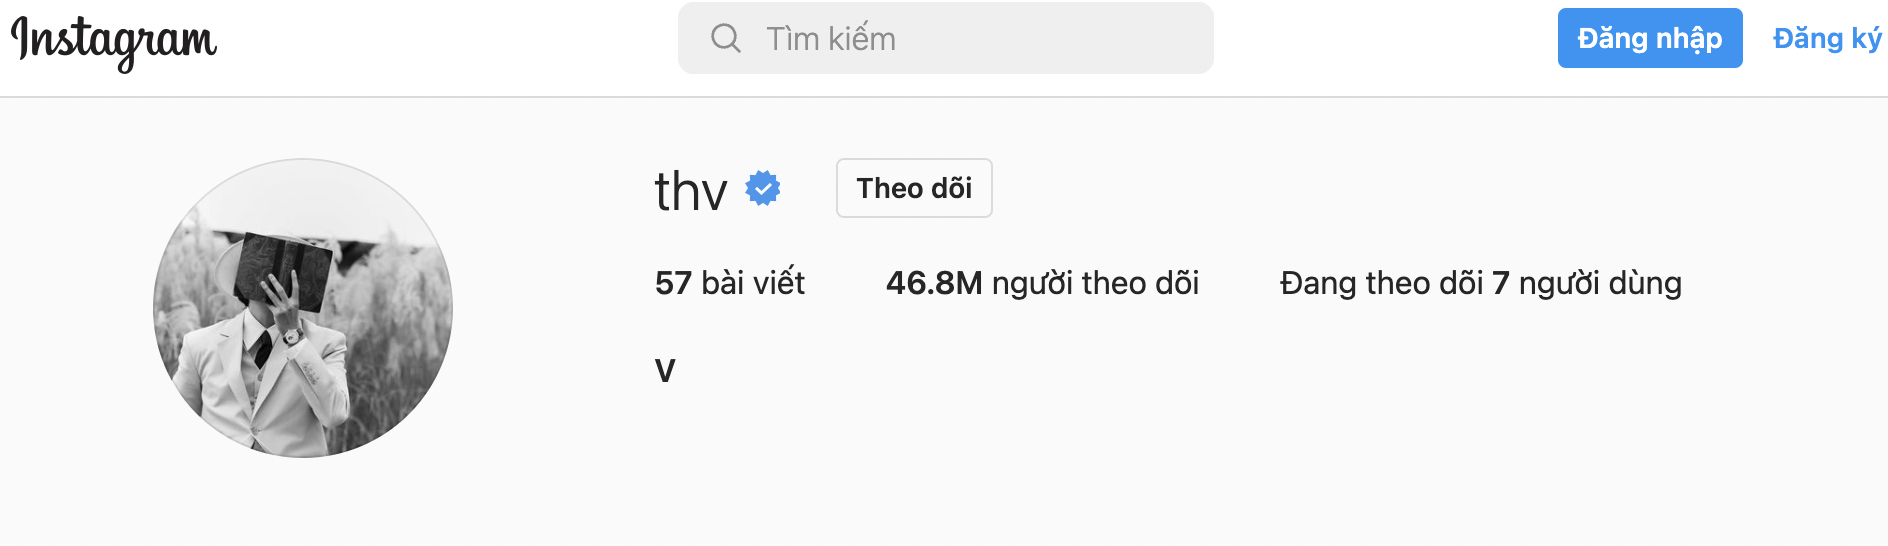 Hiện tại, tài khoản Instagram của V đã vượt mốc 46,8 triệu người theo dõi, cũng là nghệ được theo dõi nhiều nhất trên nền Instagram tại Hàn Quốc. Ảnh: TM